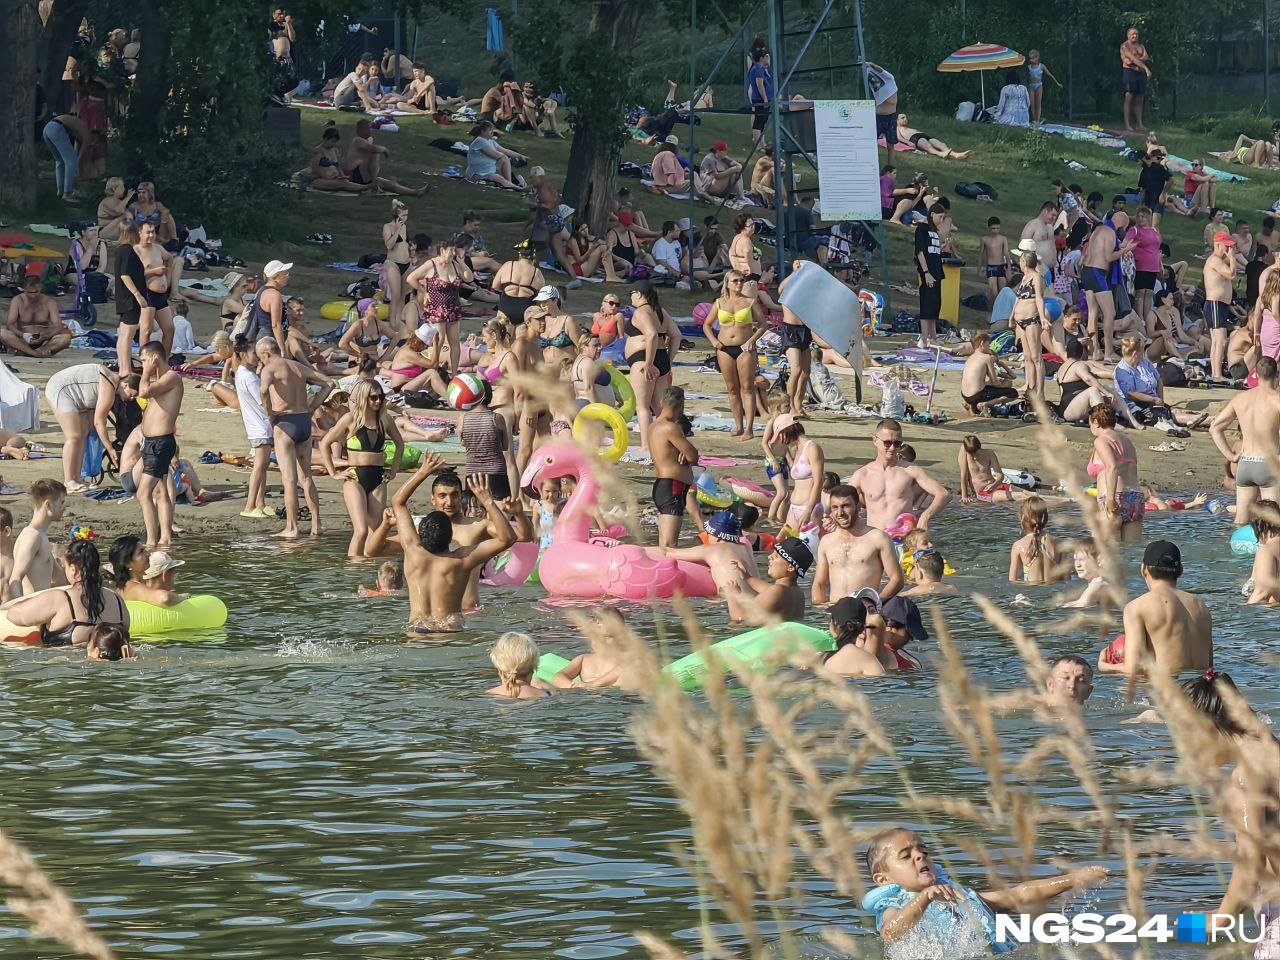 В Красноярском крае открыли второй официальный пляж для купания. Где он находится?